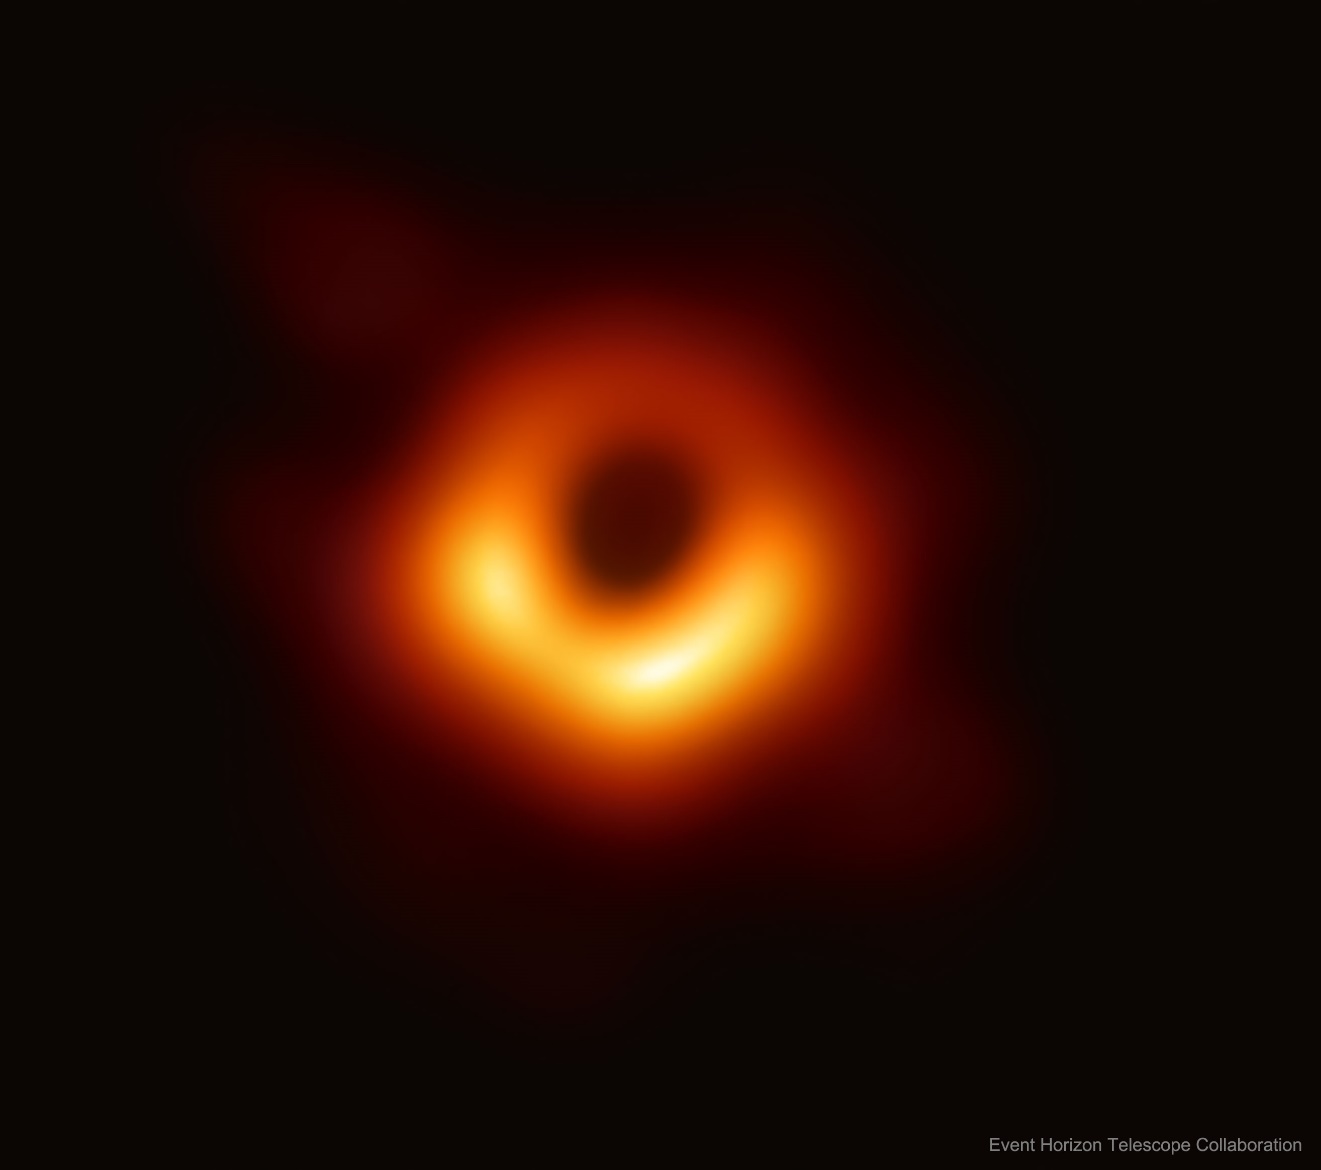 Figura 7. Imagen integrada del agujero negro en el centro de la galaxia M87. Tomada de https://apod.nasa.gov/apod/ap190411.html